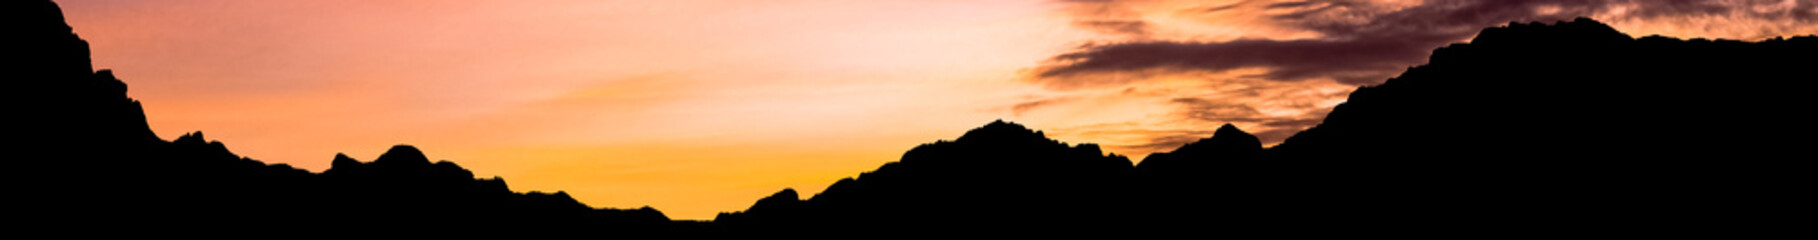 Silhouette de montagnes au coucher du soleil, cirque de Cilaos, île de la Réunion 